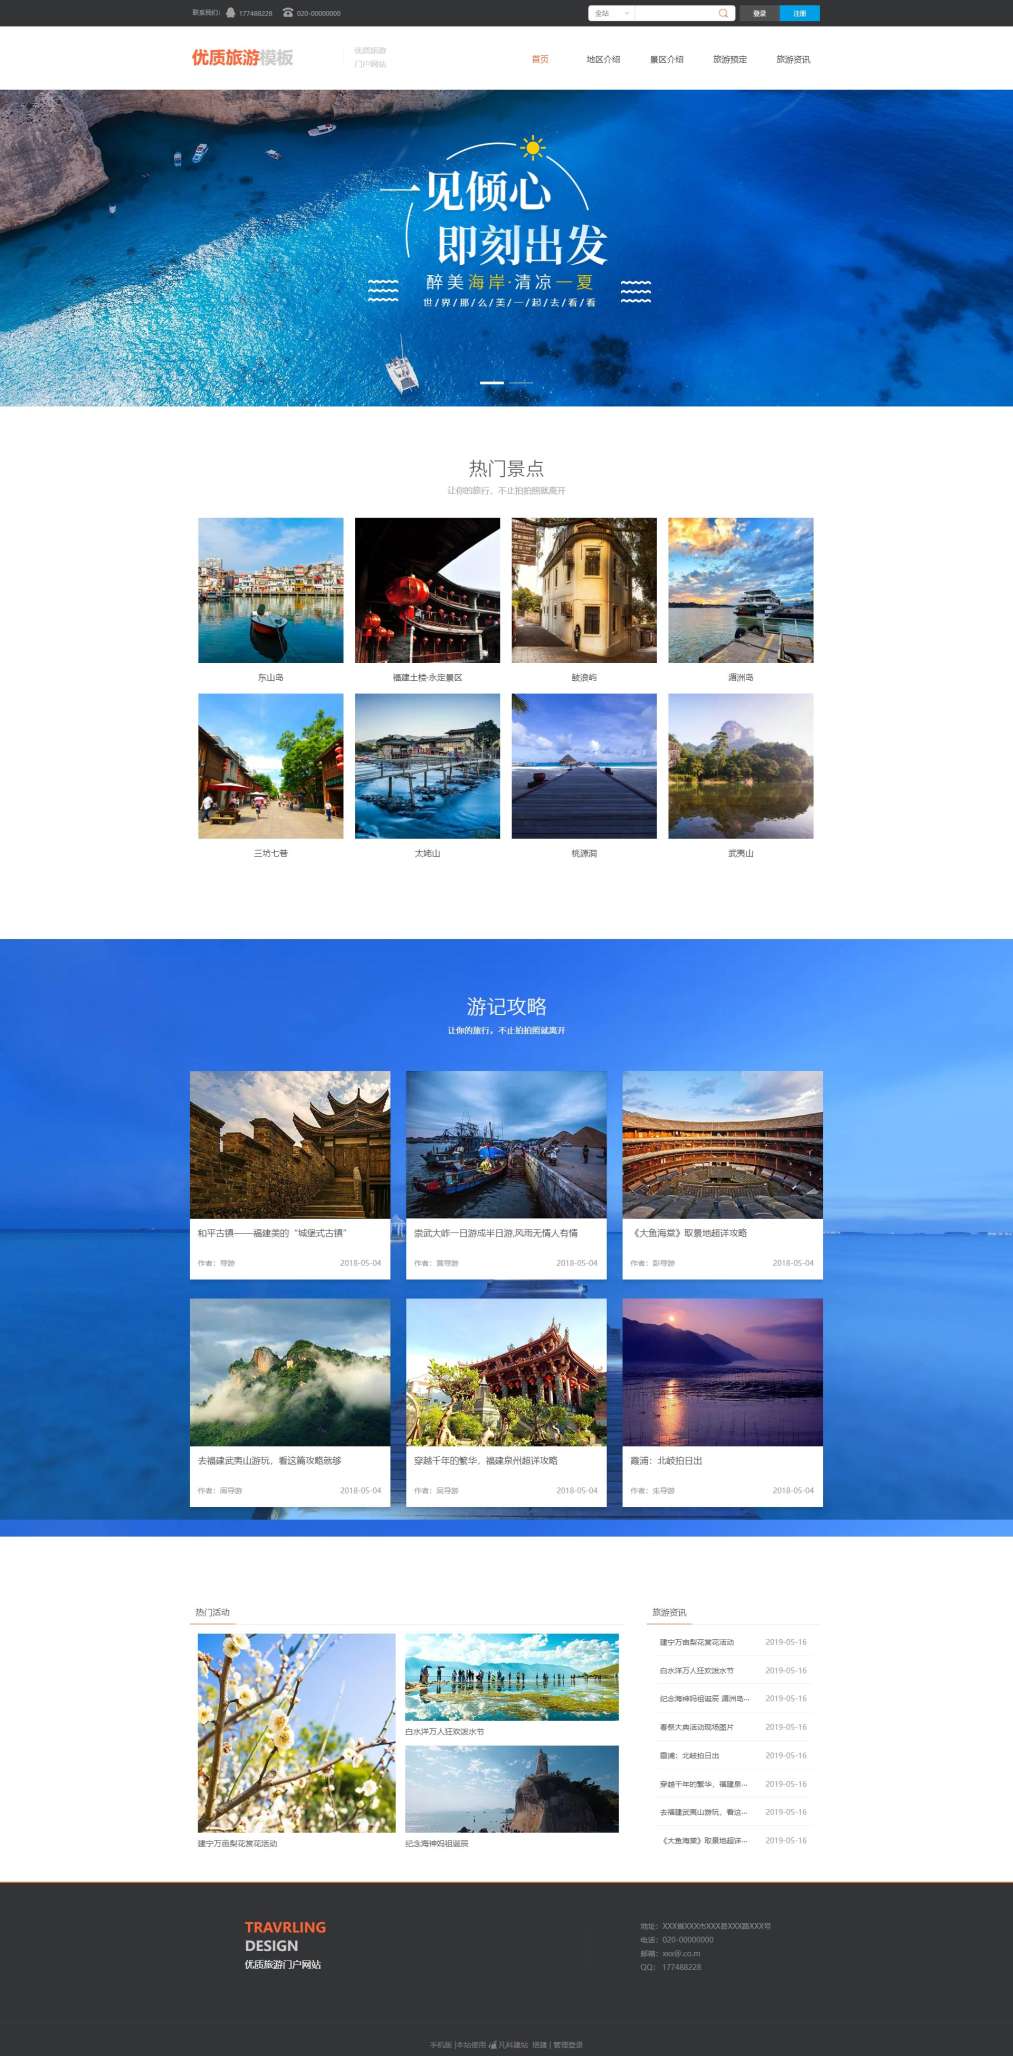 优质海边旅游网站模板